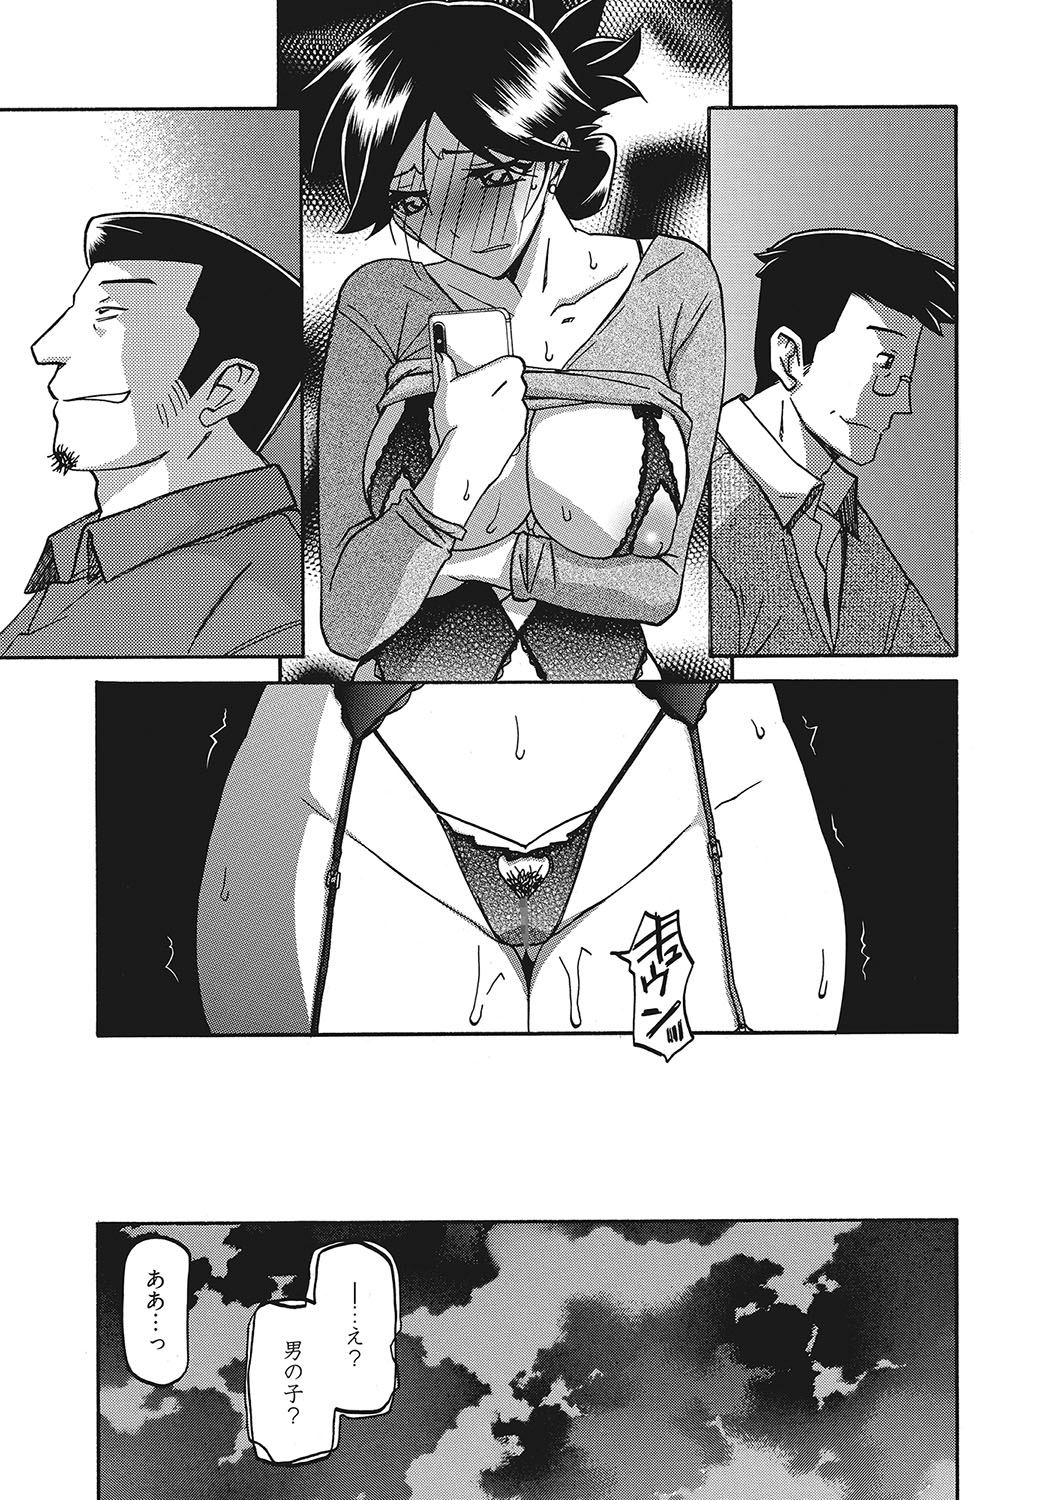 web 漫画ばんがいち Vol.16